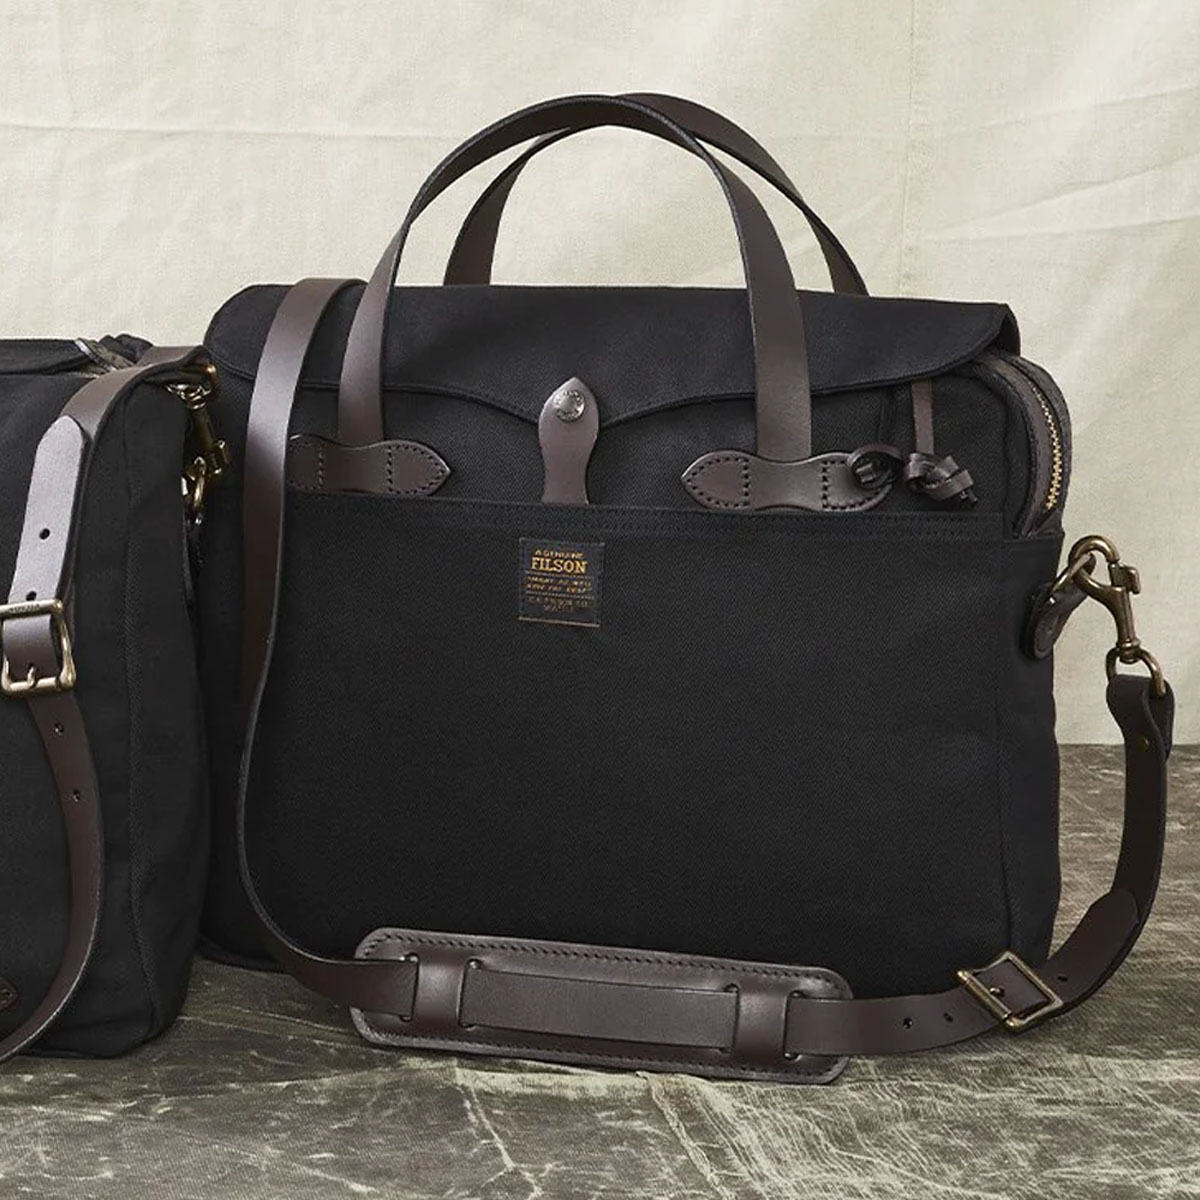 Filson Original Briefcase Black, extraordinary bag for an ordinary day